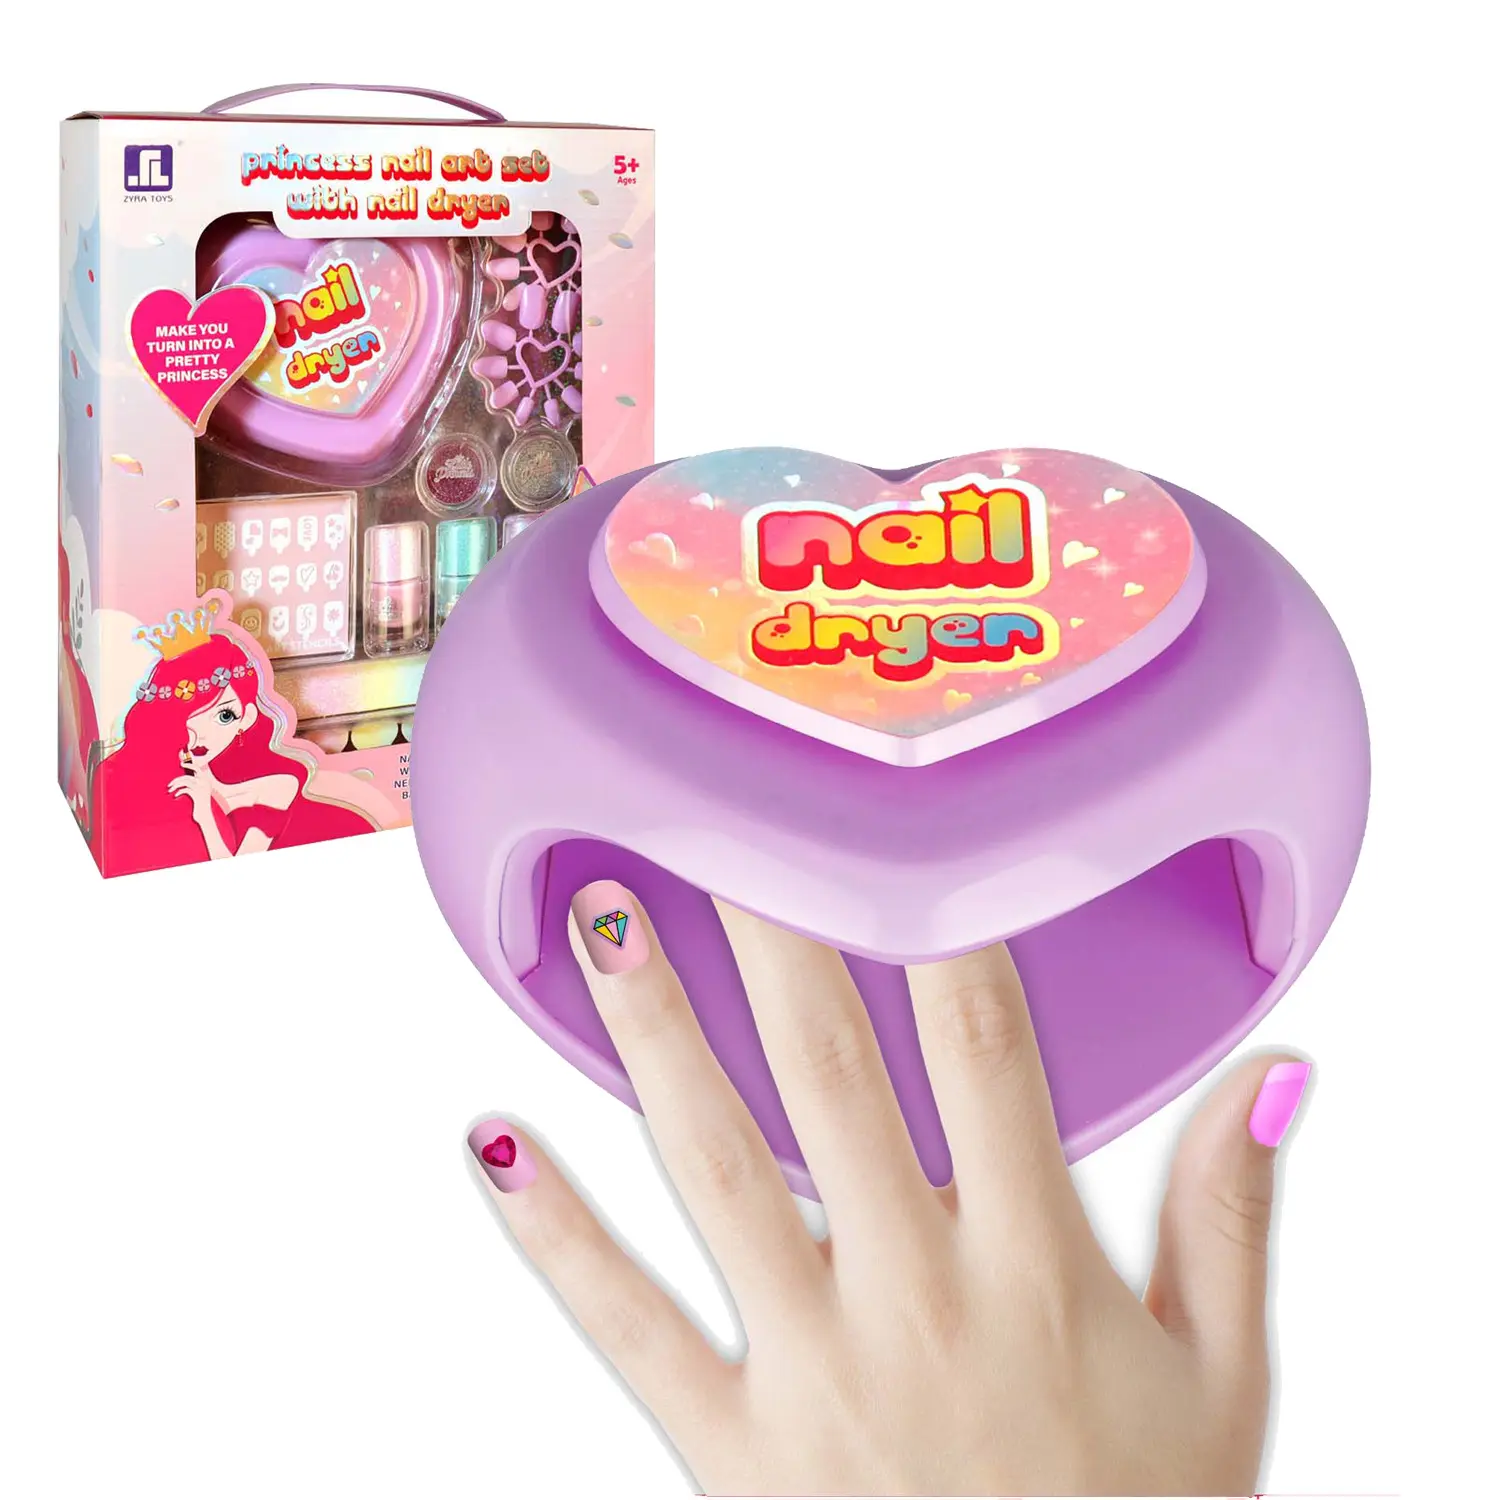 Faire semblant de bricolage cosmétiques jeu filles Salon de manucure jouets enfants jouet vernis à ongles jouet